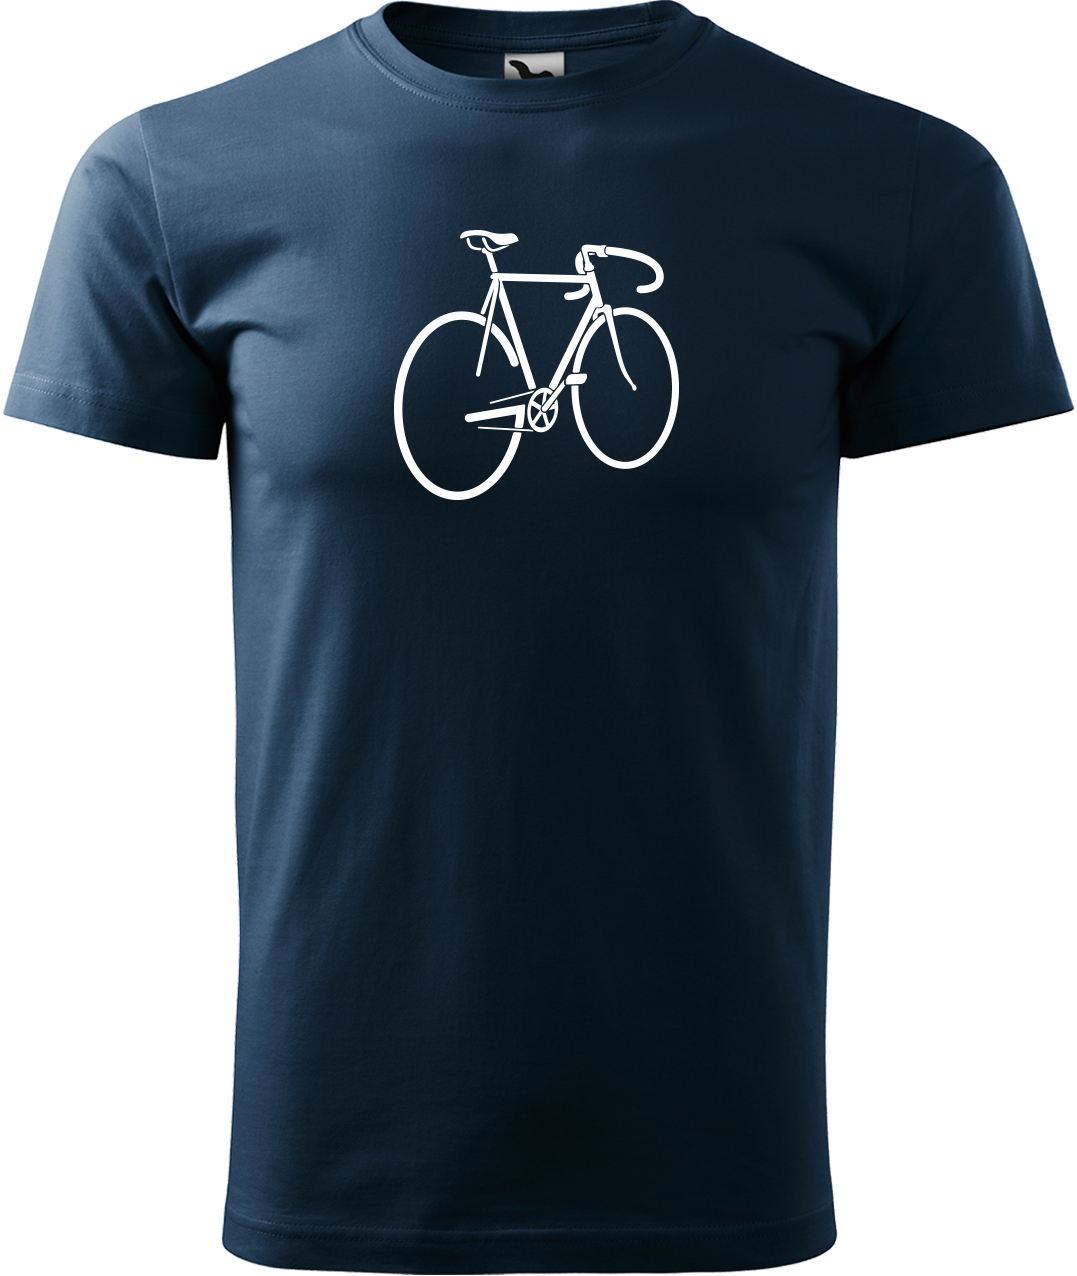 Pánské tričko s kolem - Pánské kolo Velikost: M, Barva: Námořní modrá (02)